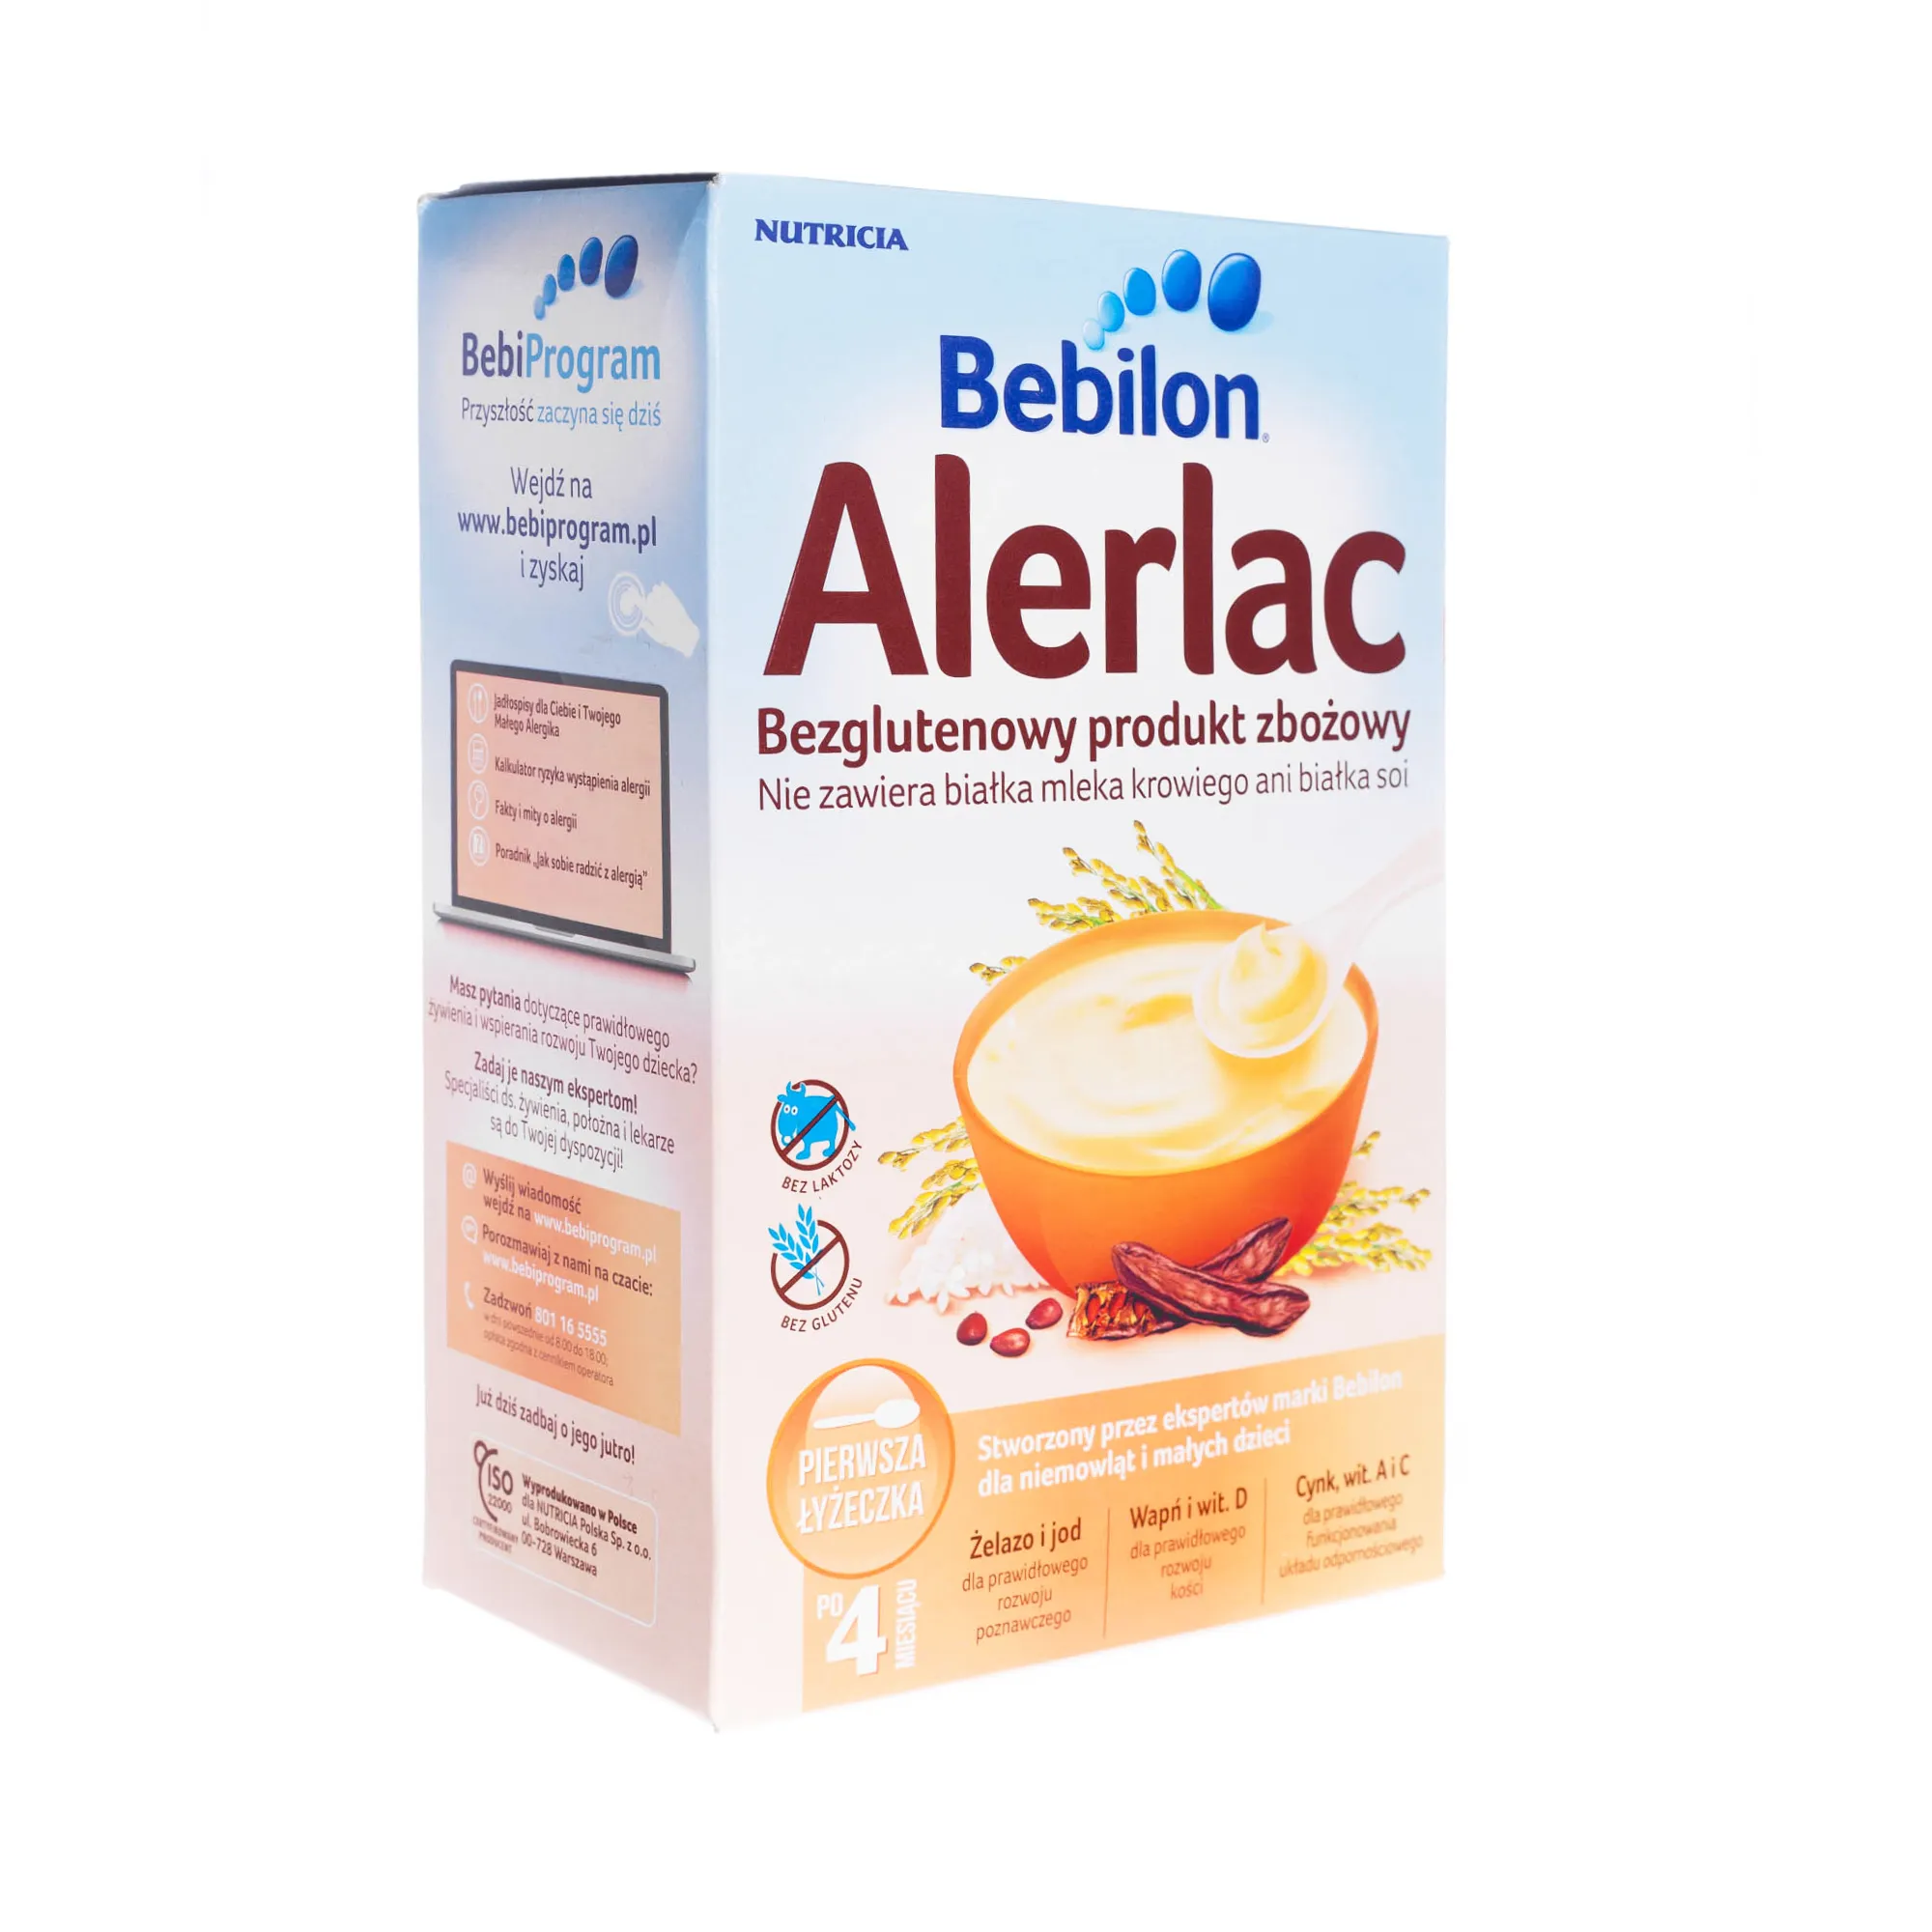 Bebilon Alerlac, bezglutenowy produkt zbożowy nie zawierający białka mleka krowiego ani białka soi, 400 g